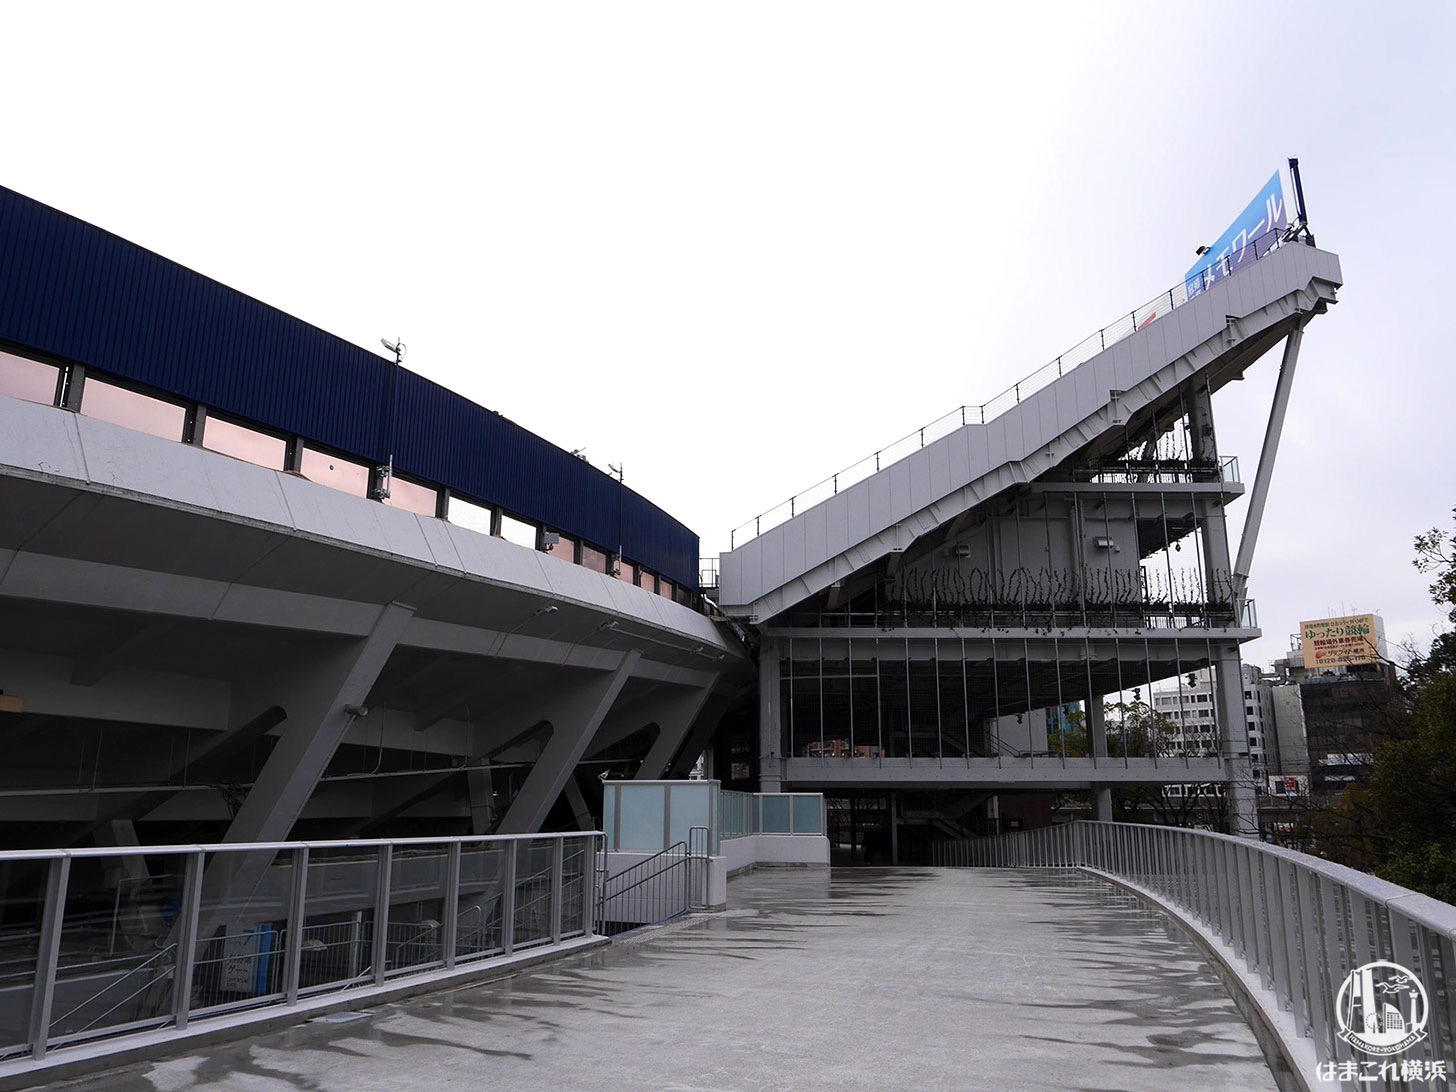 横浜スタジアム外周を1周できる「Yデッキ」から見たレフトウィング席